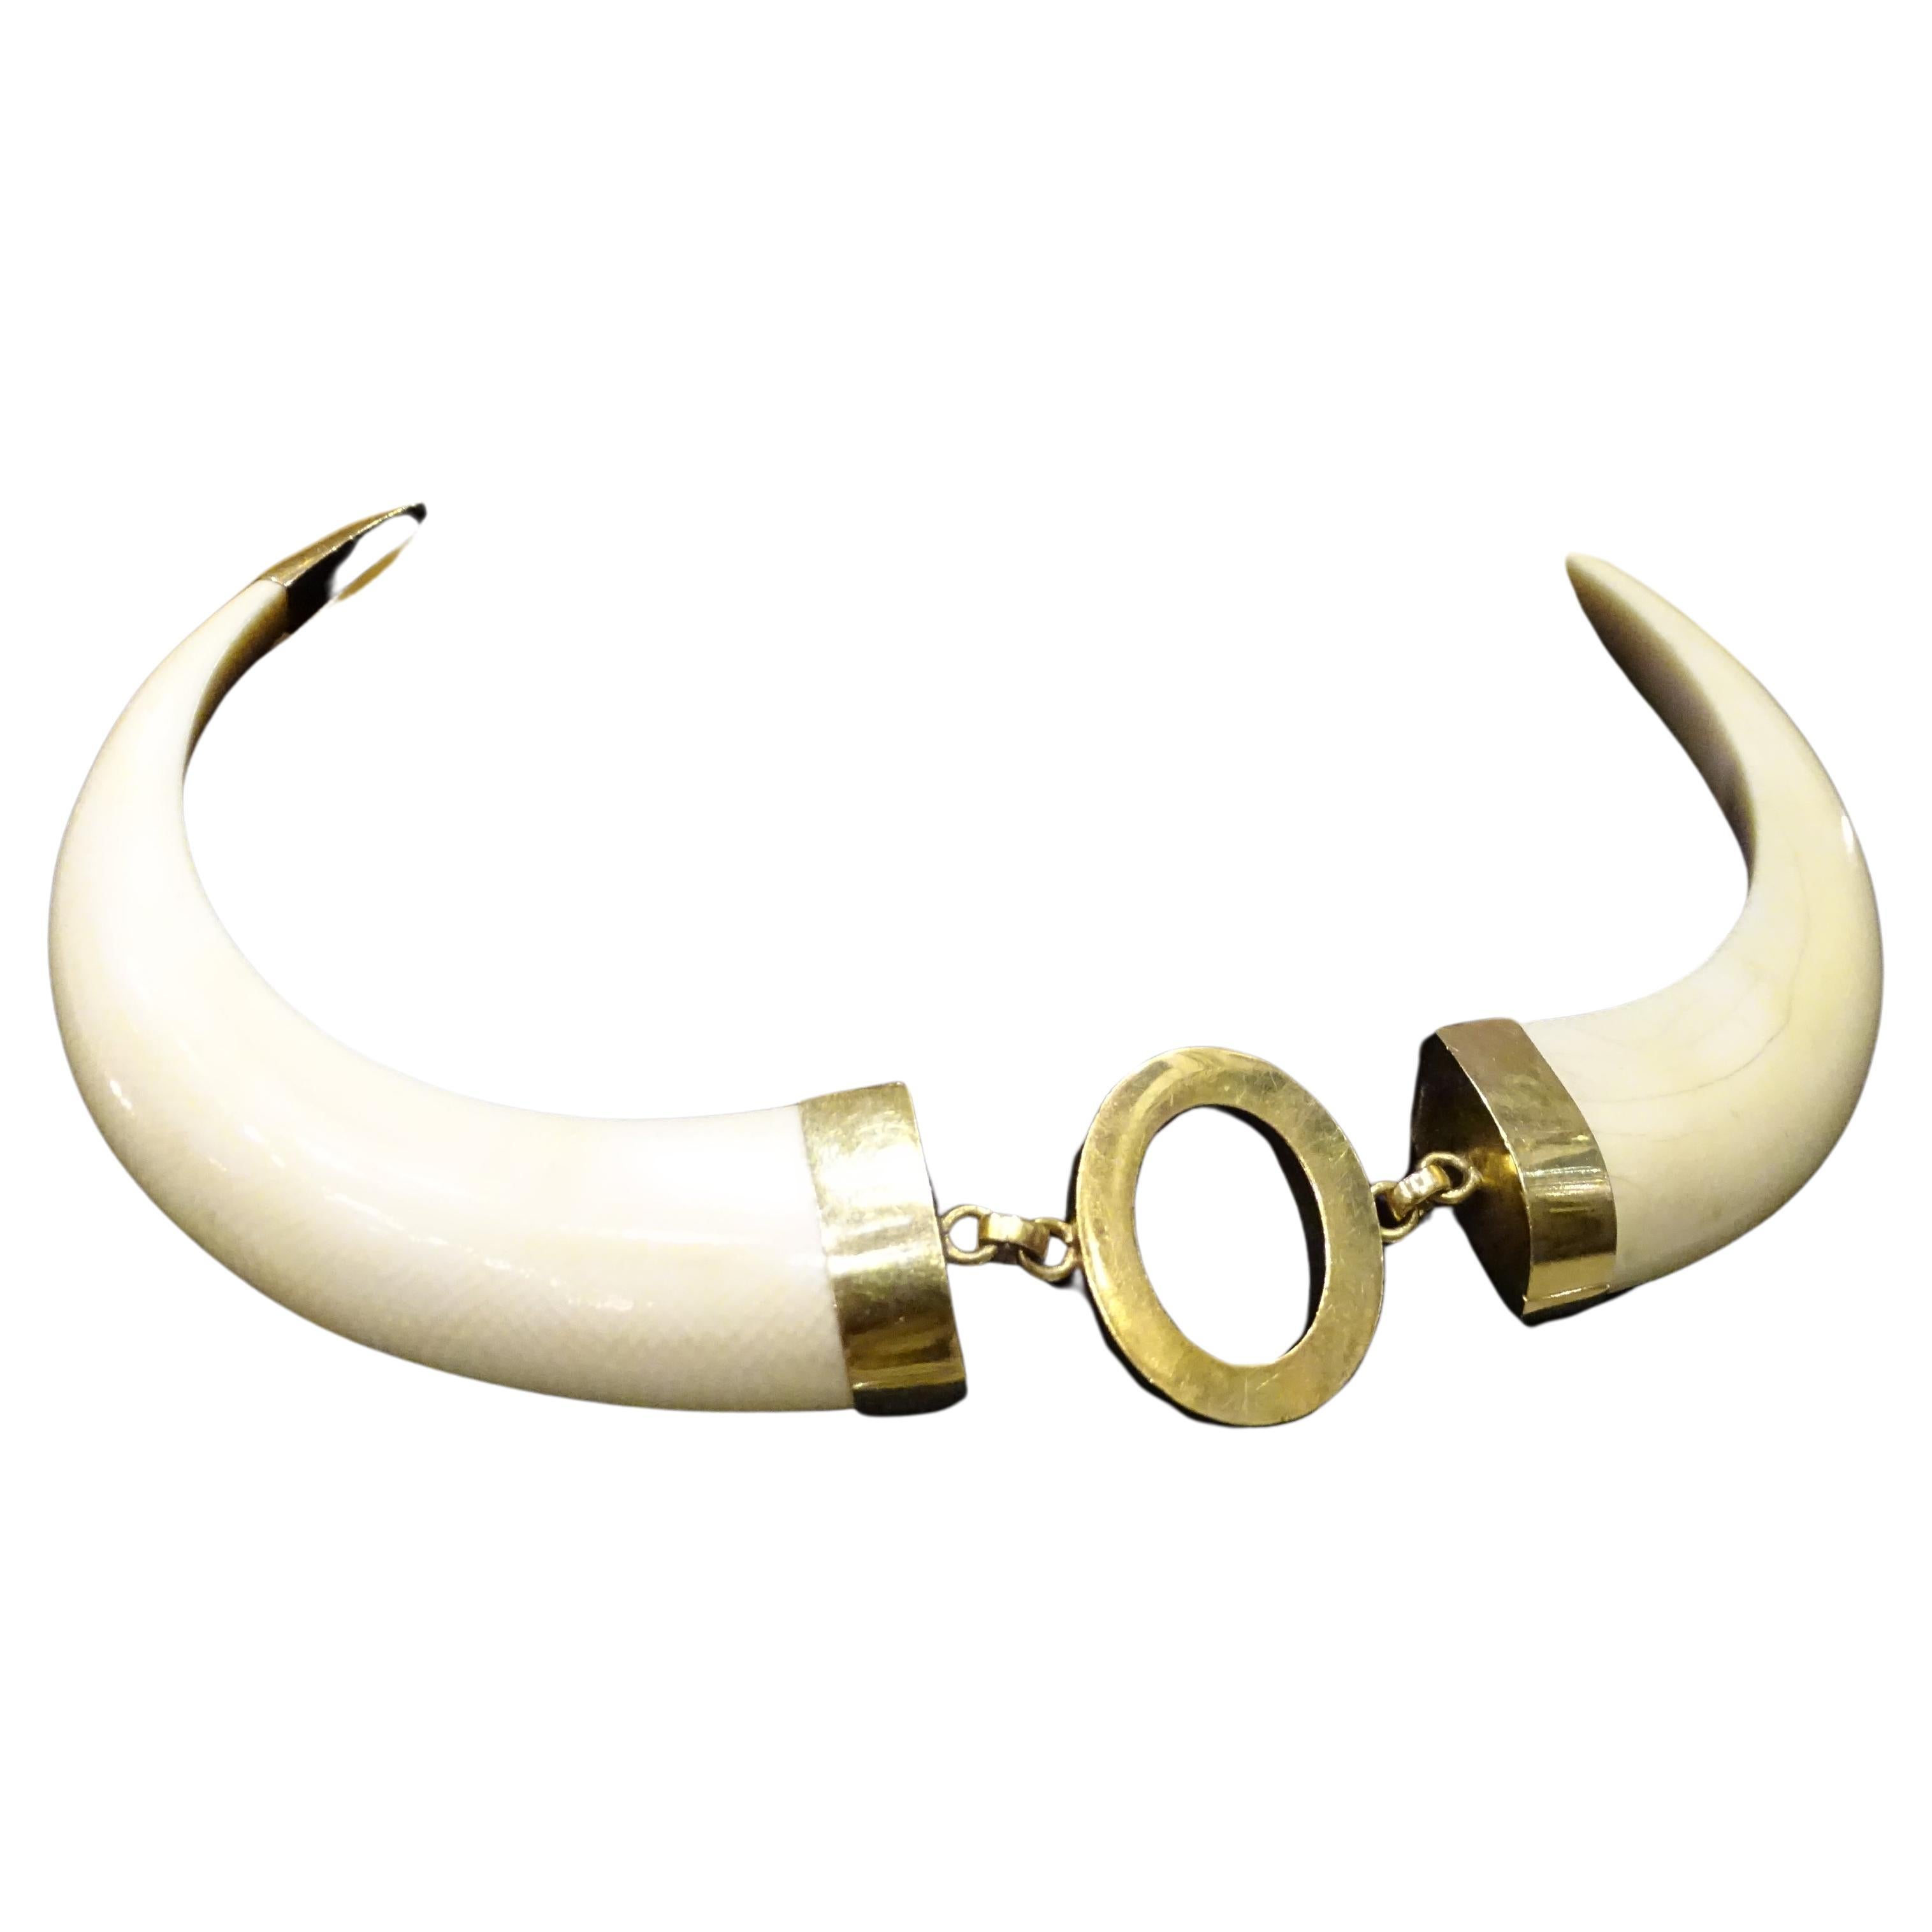 Wunderschöne Halskette aus zwei polierten Knochenstücken in Form eines Stoßzahns. Die Fassung, die Schließe und das zentrale ovale Motiv sind aus 18-karätigem Gold gefertigt. Die Länge ist dank der Kettenglieder verstellbar. Hakenverschluss. Elegant